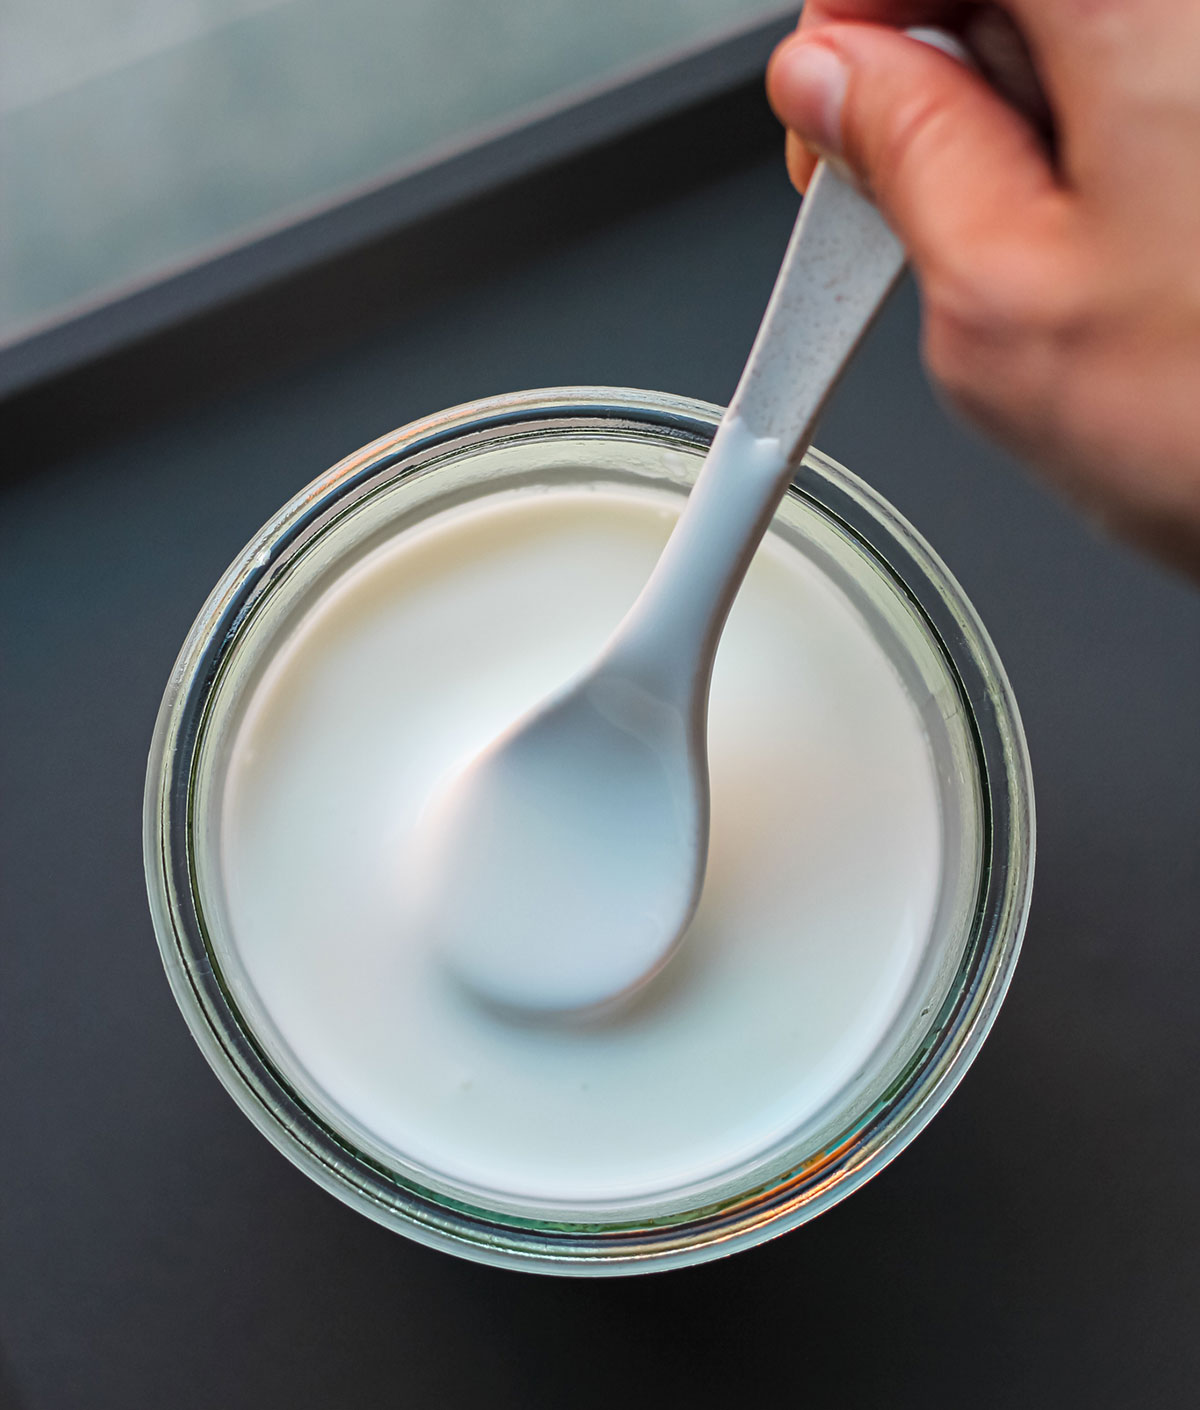 Viili, el yogur suave que no necesita yogurtera